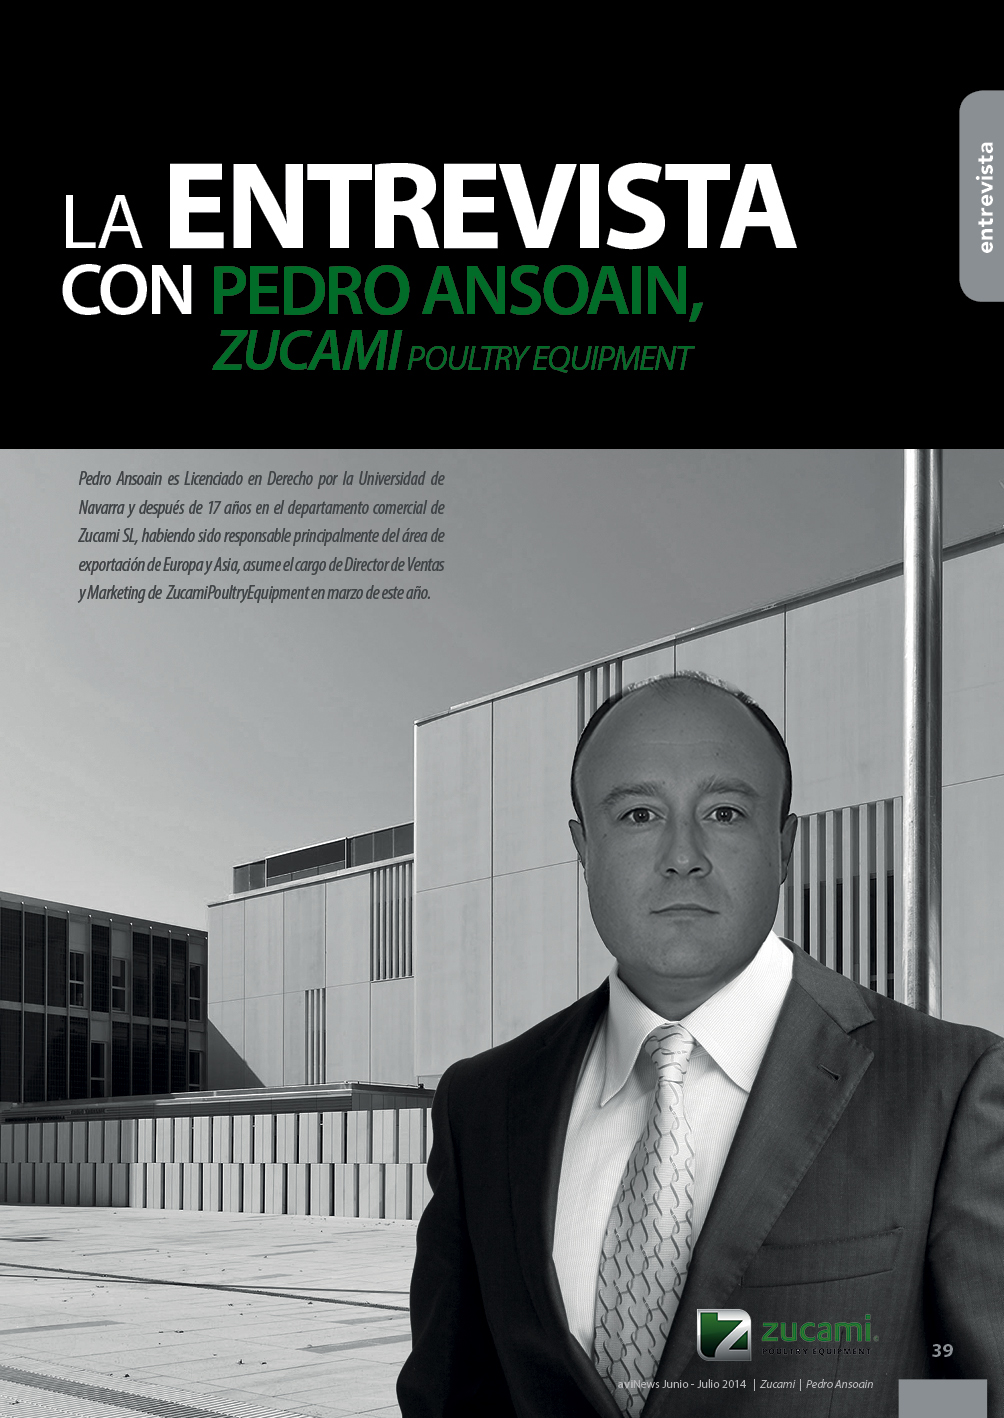 Entrevista con Pedro Ansoain, ZUCAMI POULTRY EQUIPMENT